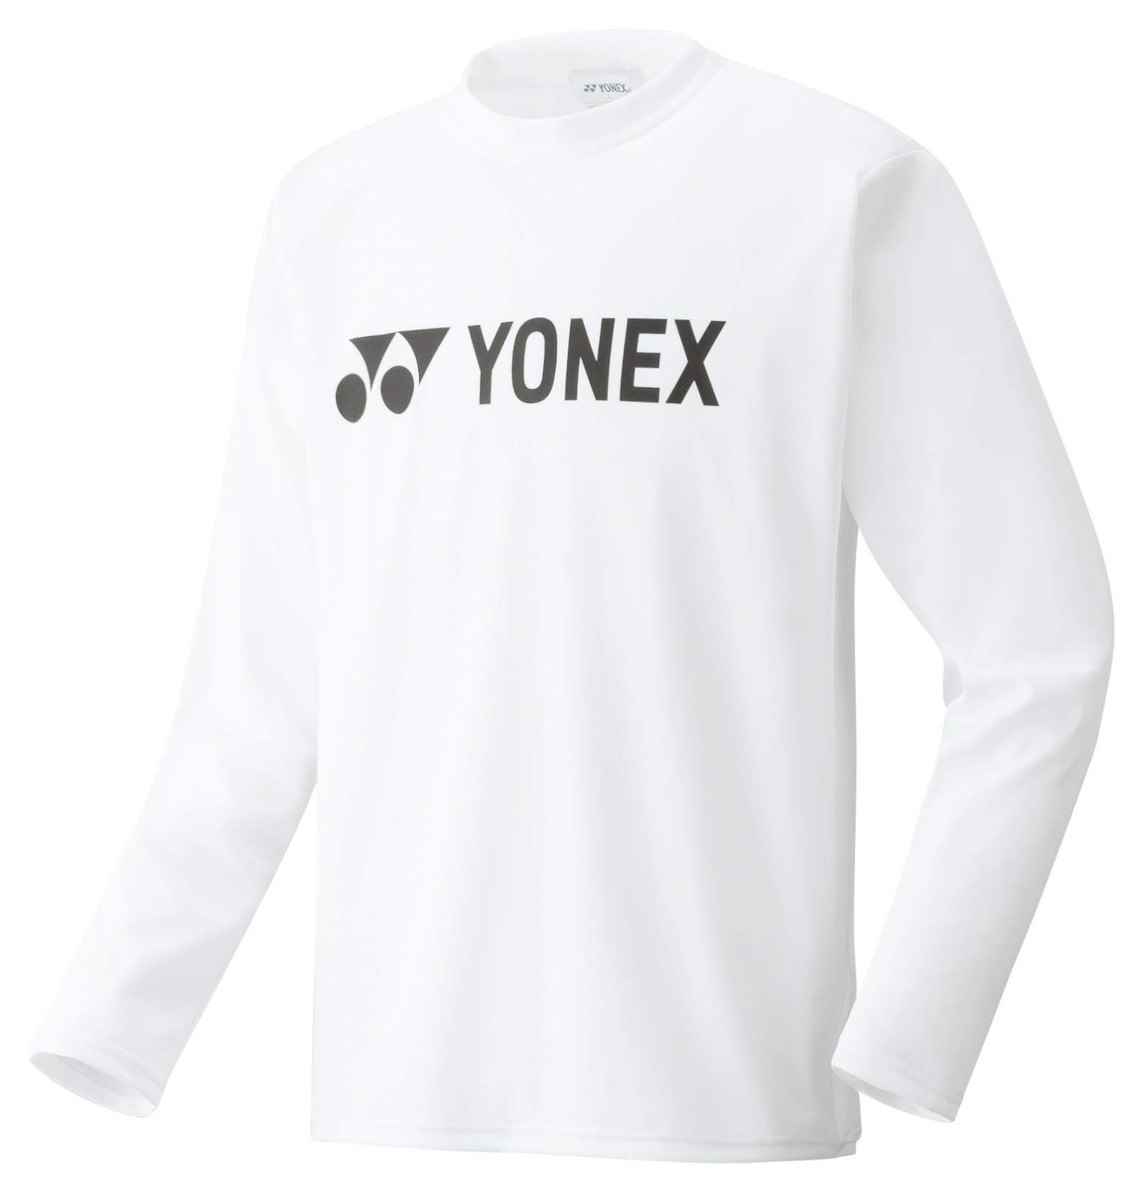 ヨネックス YONEX 16158 テニス・バドミントン ウェア(ユニセックス) ロングスリーブTシャツ ユニセックス ホワイト メンズウェア 